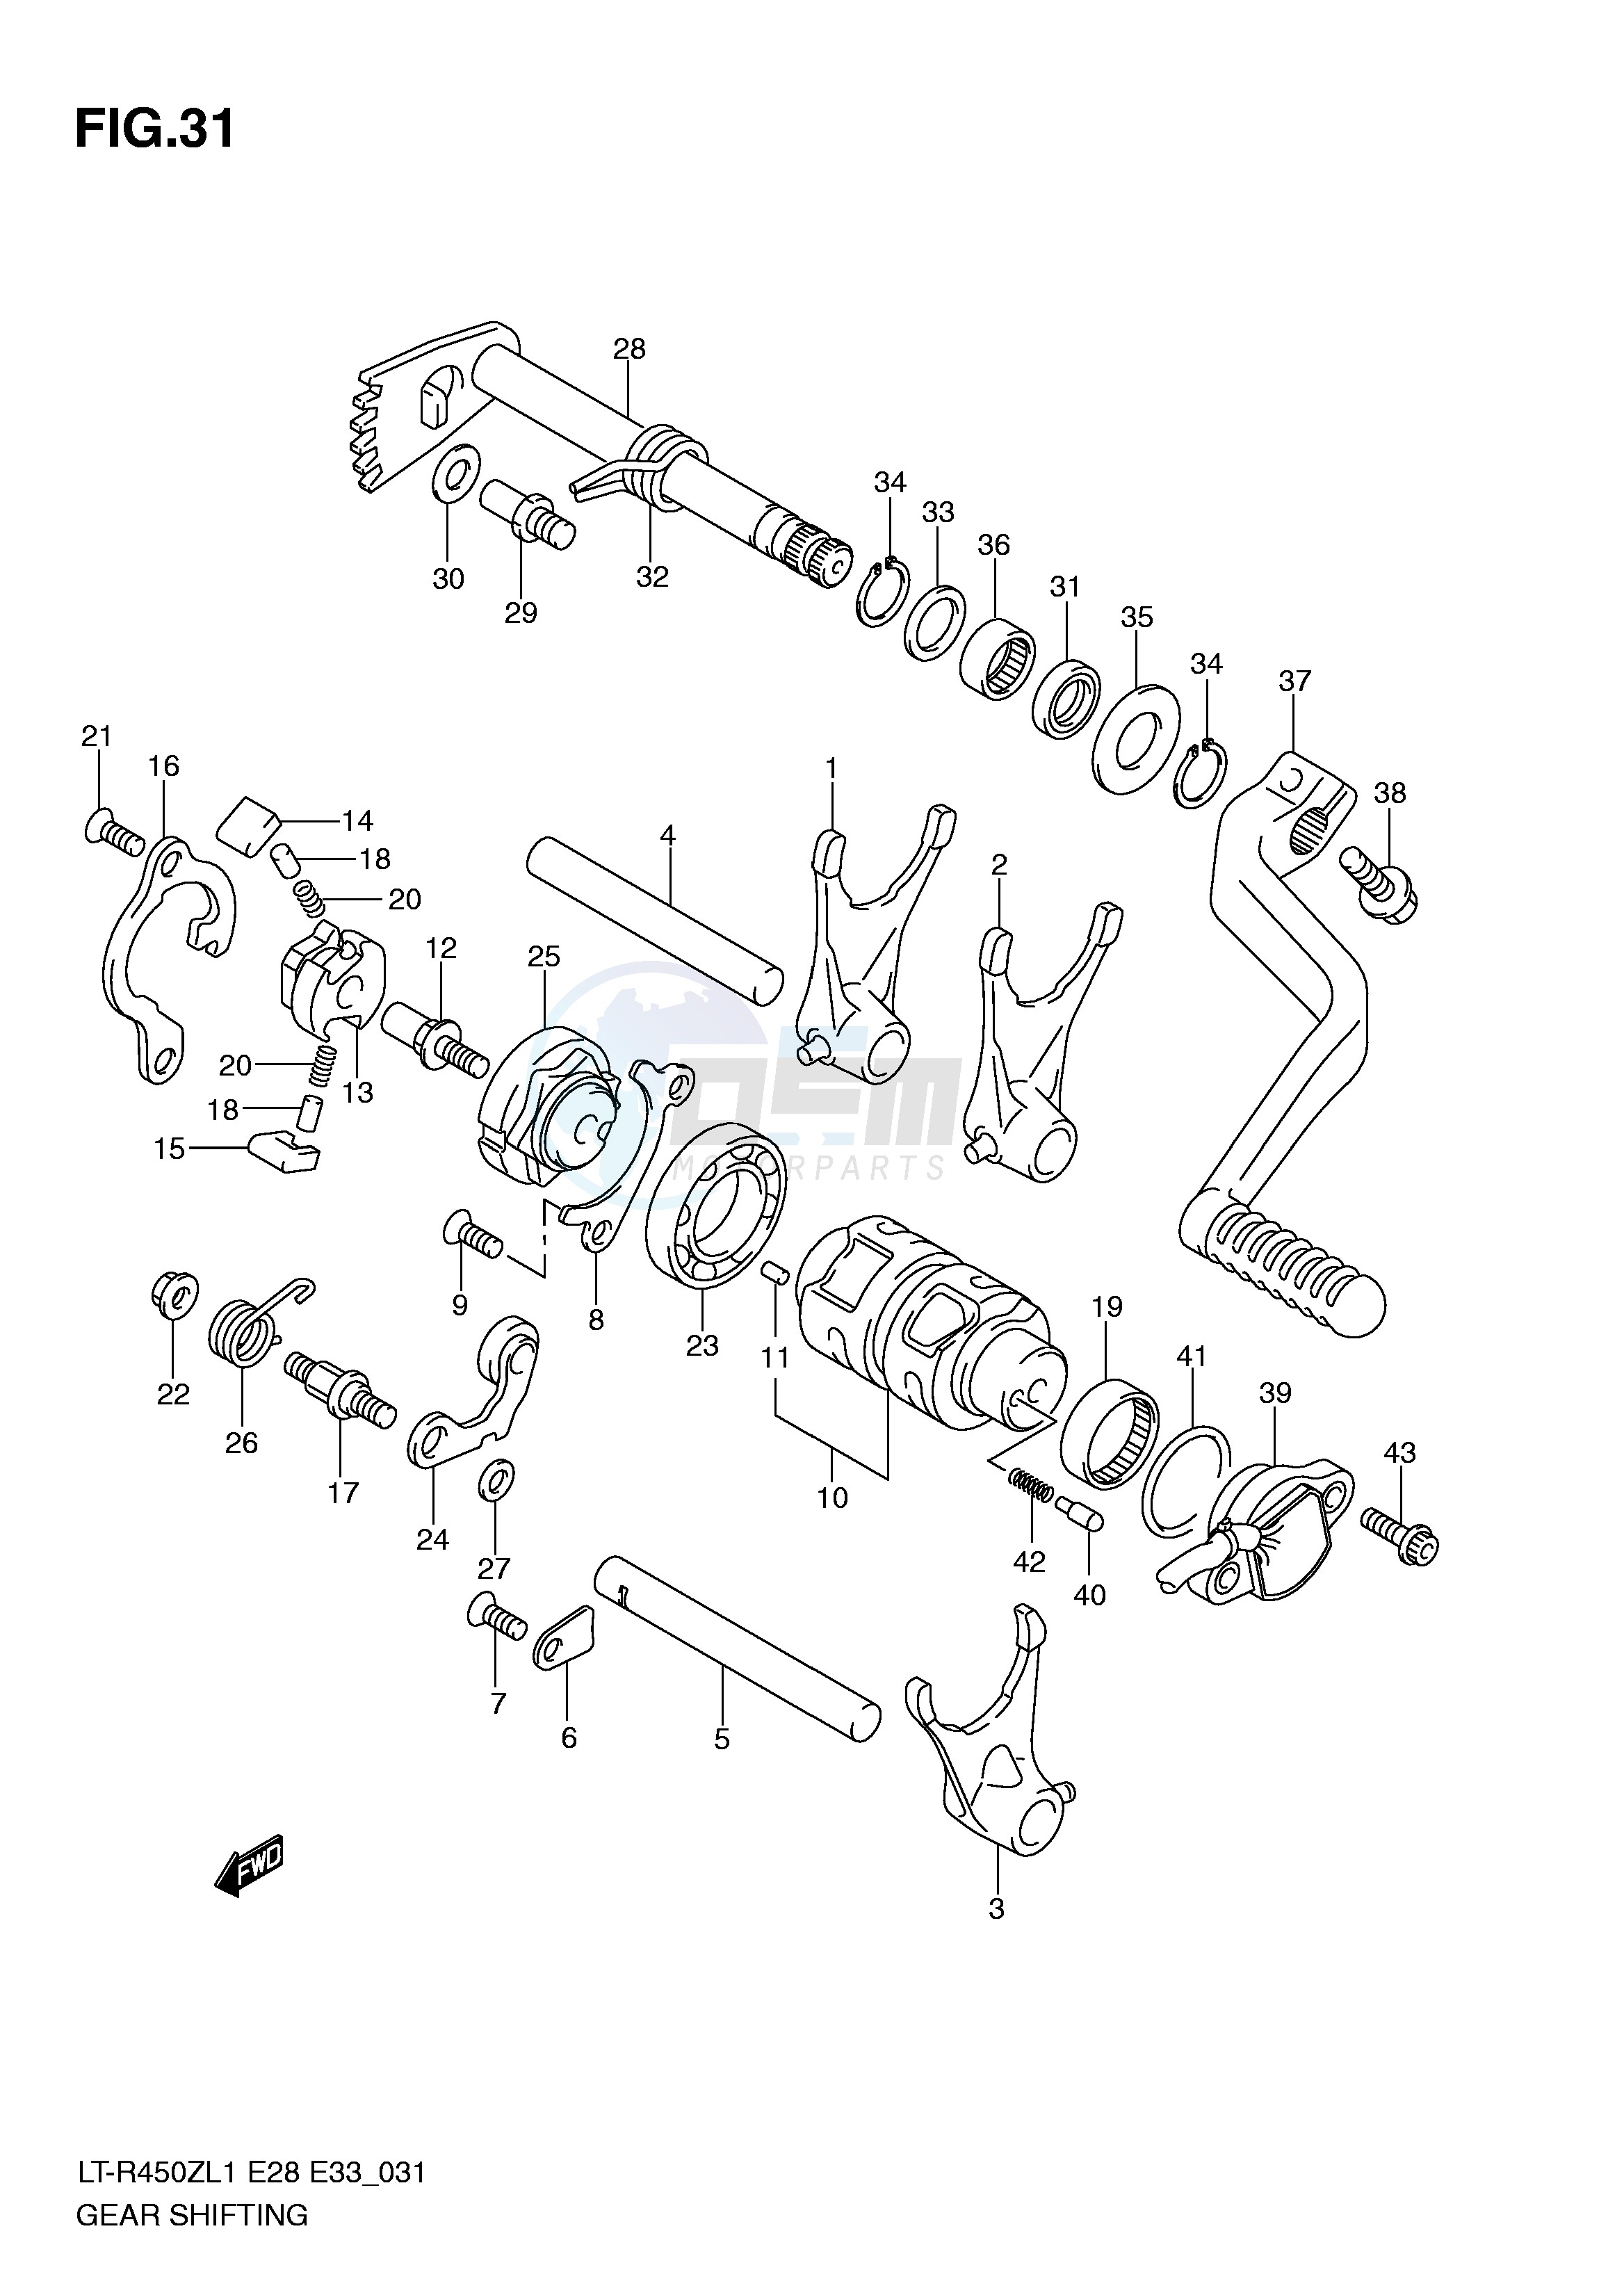 GEAR SHIFTING (LT-R450L1 E28) blueprint